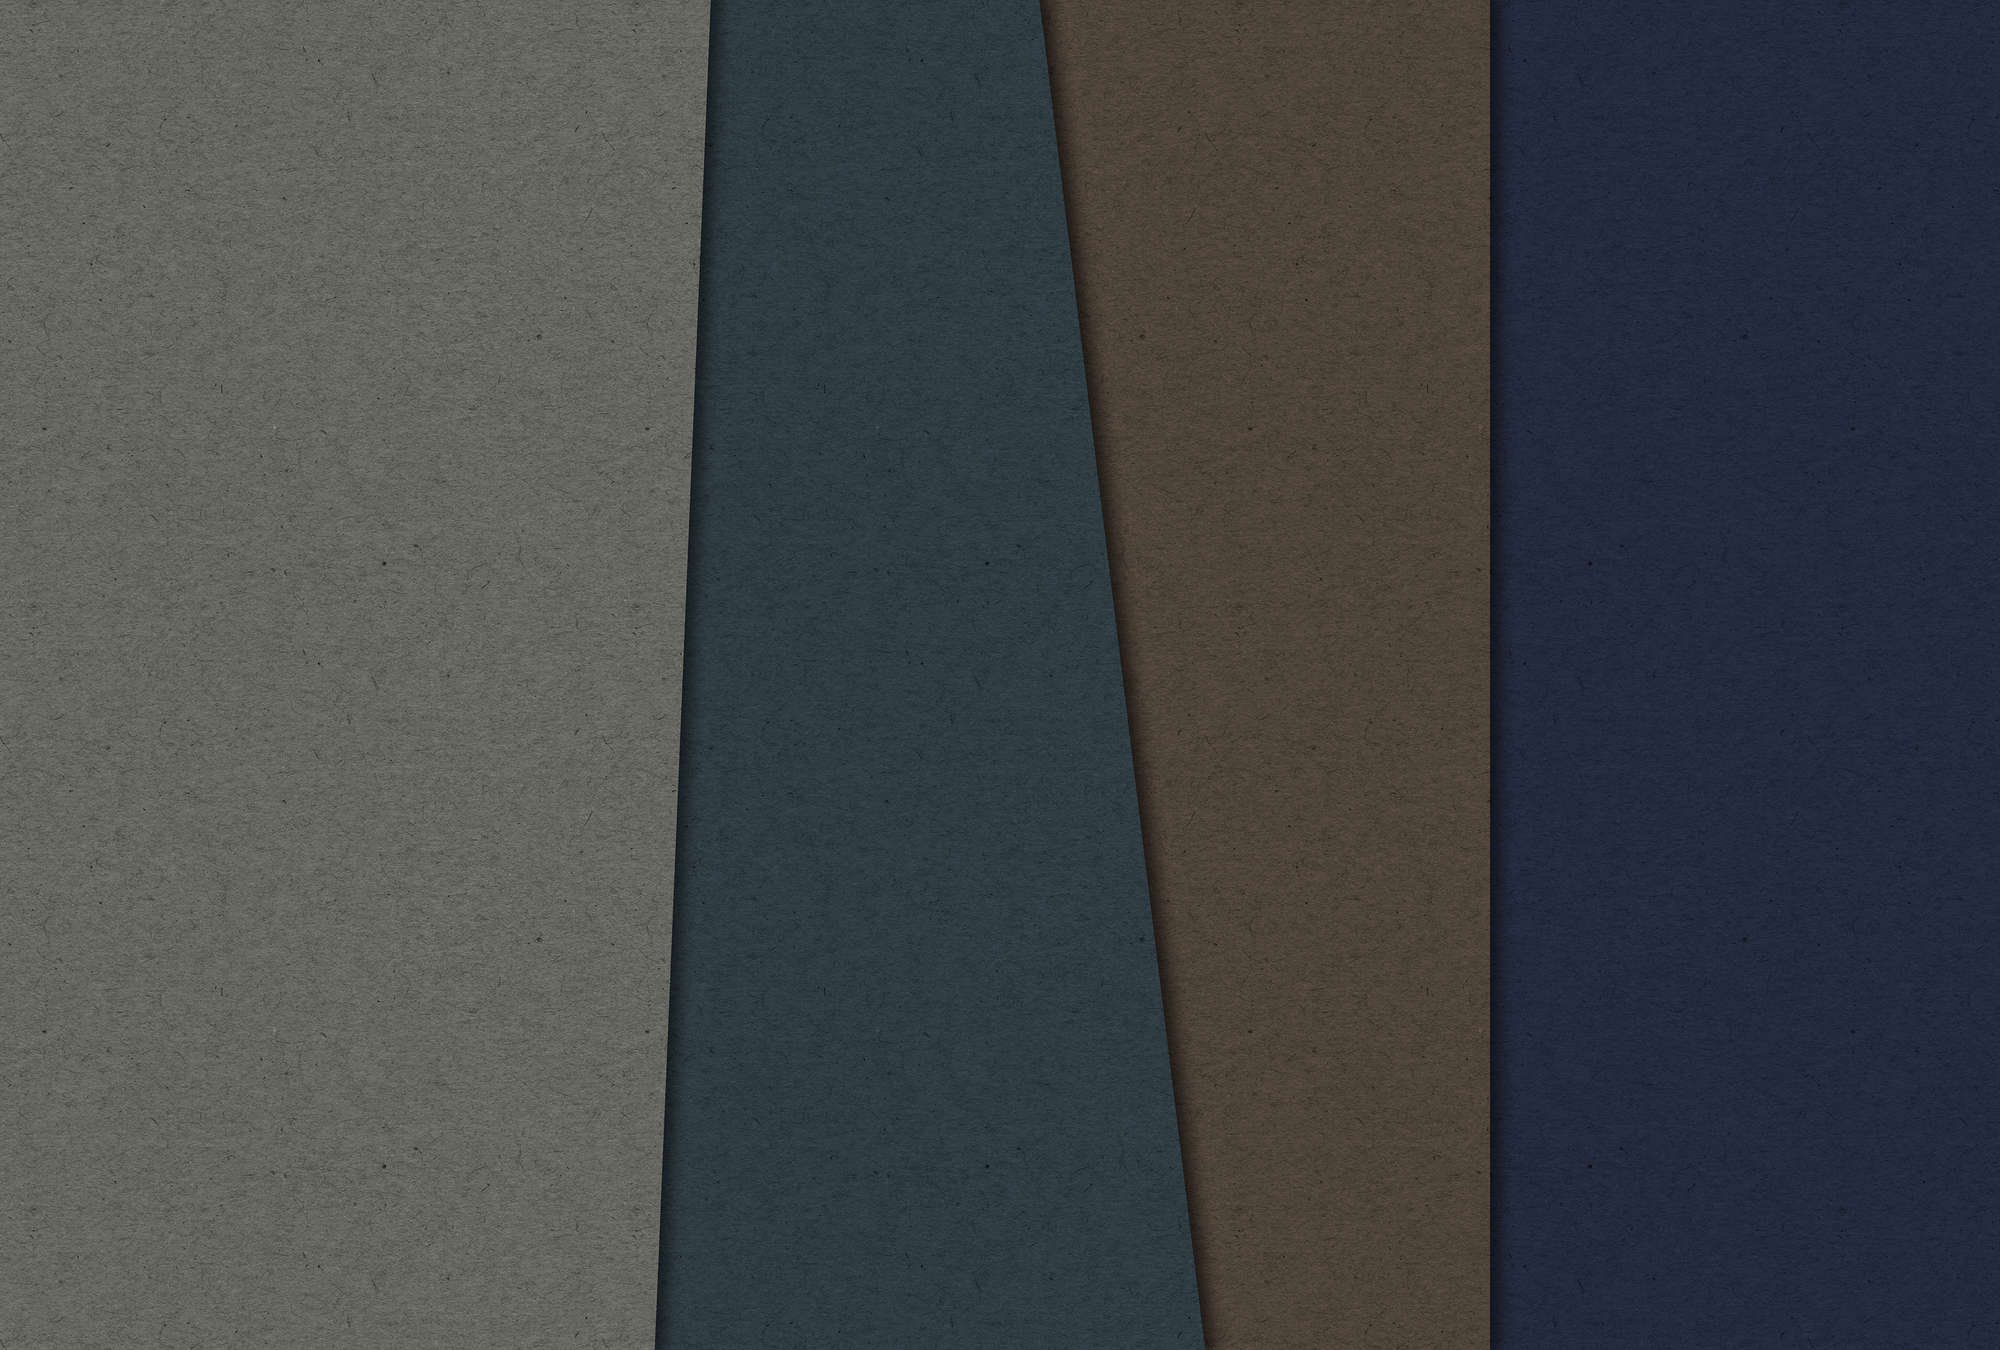             Layered Cardboard 2 - Papier peint structure carton avec champs de couleurs sombres - bleu, marron | Premium intissé lisse
        